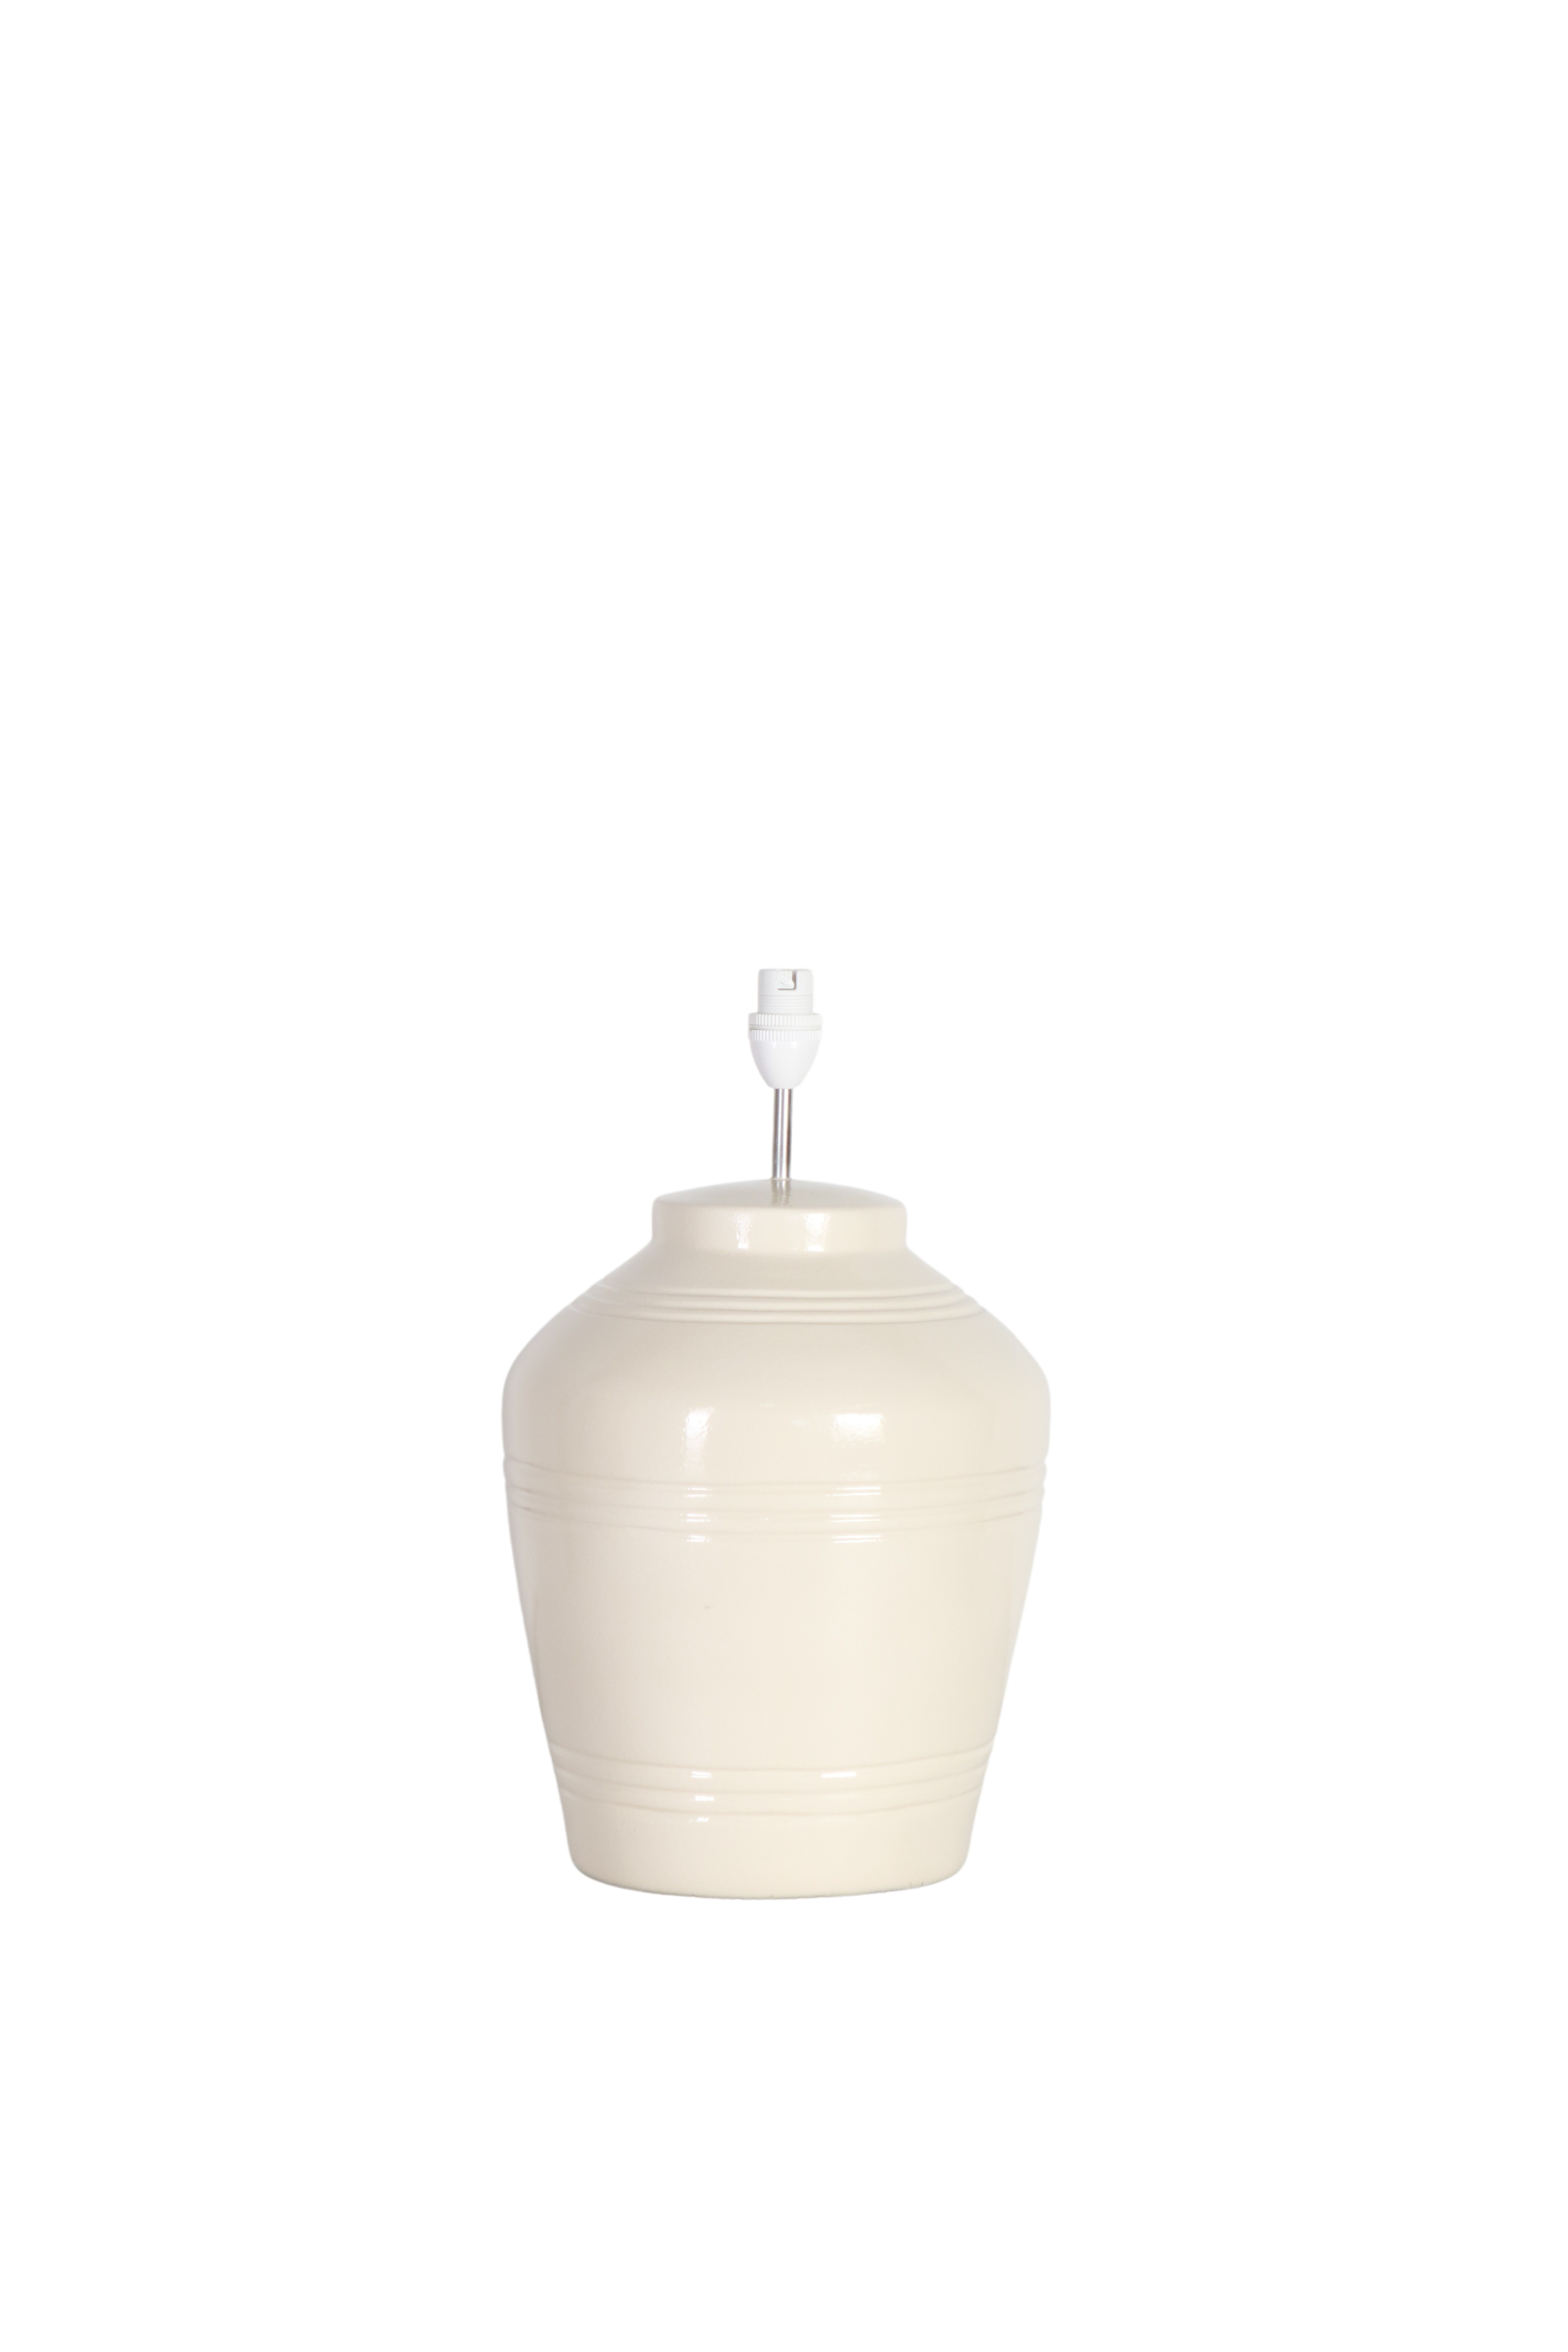 cream white ceramic lamp base